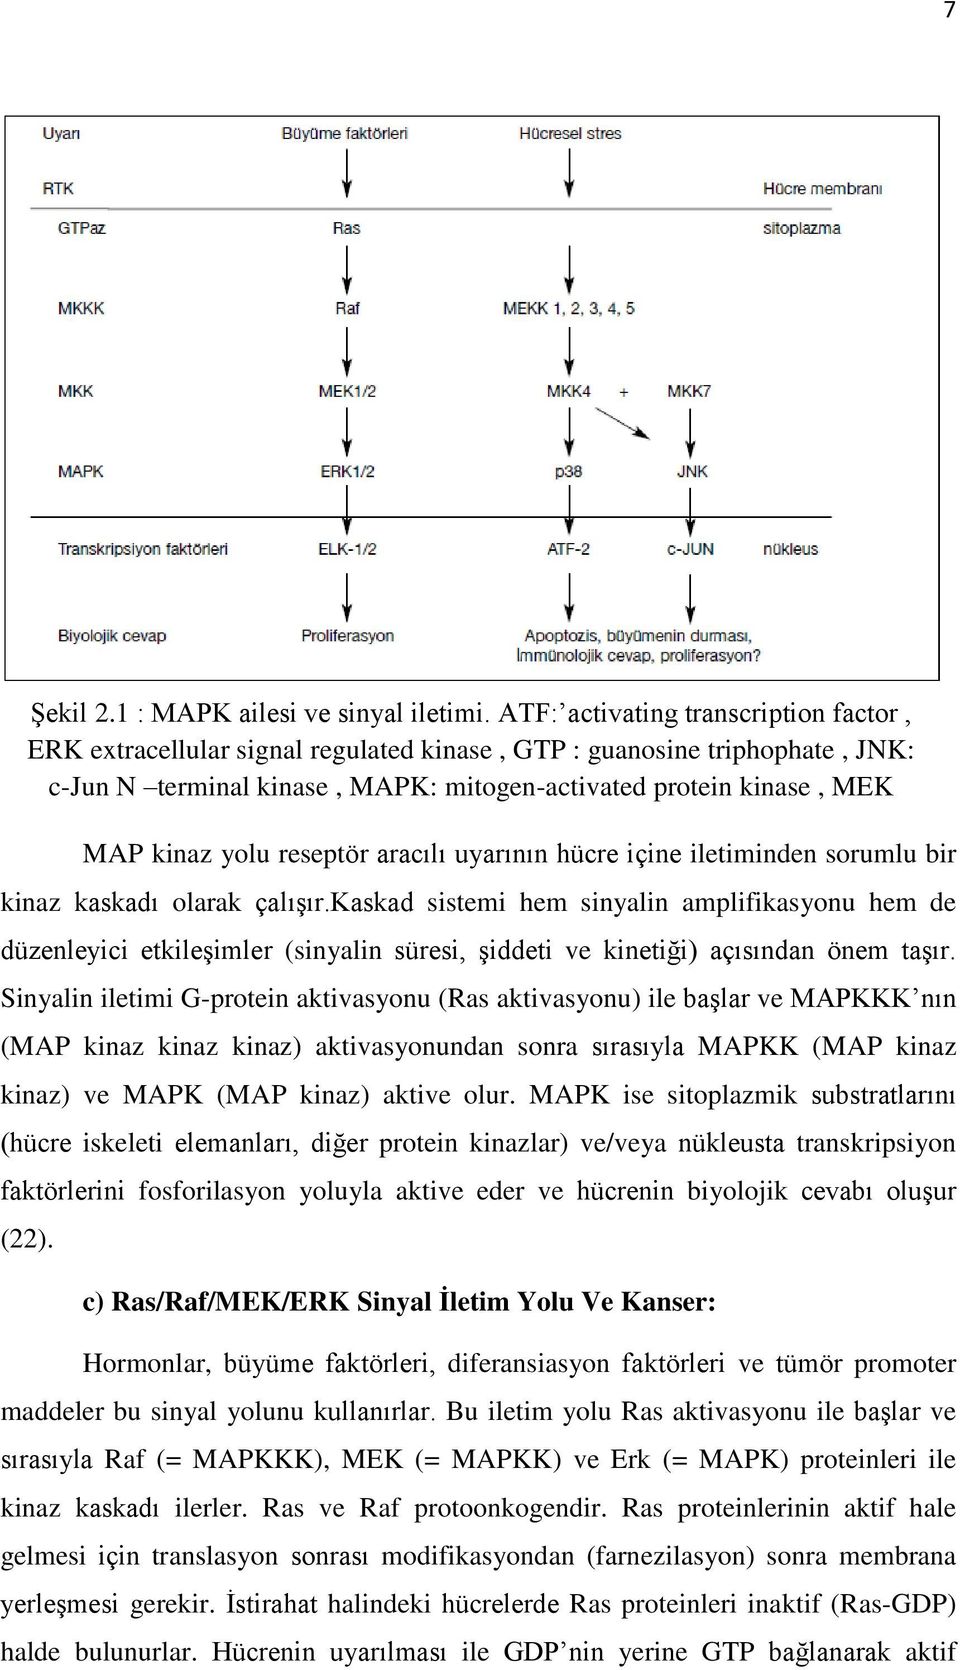 extracellular signal regulated kinase, MEKK: MAPK/ERK kinase kinase MAP, MKK: kinaz MAPK yolu reseptör kinase, aracılı MKKK: uyarının MAPK hücre kinase içine kinase.